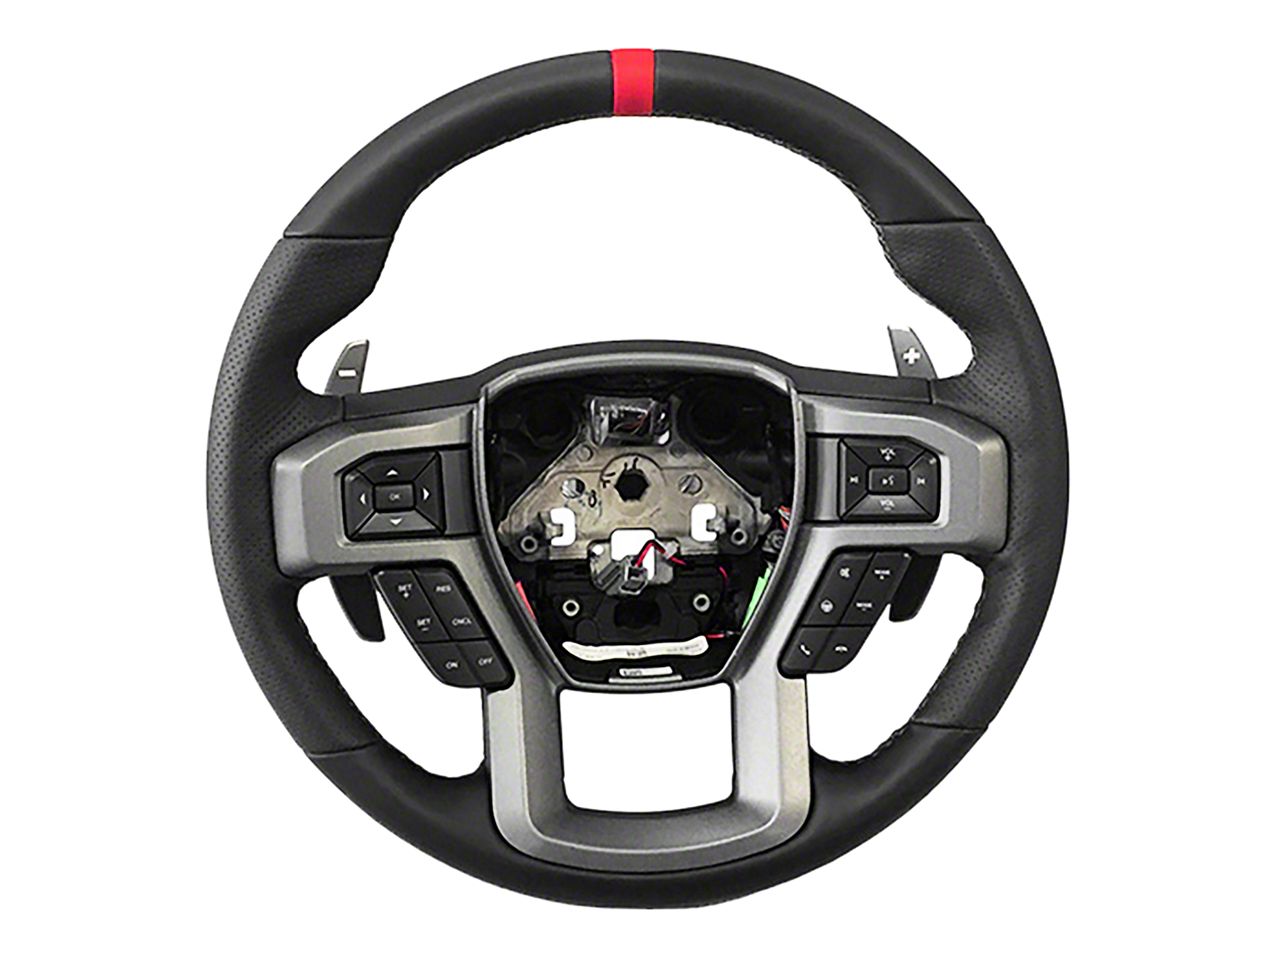 Silverado Steering Wheels & Accessories